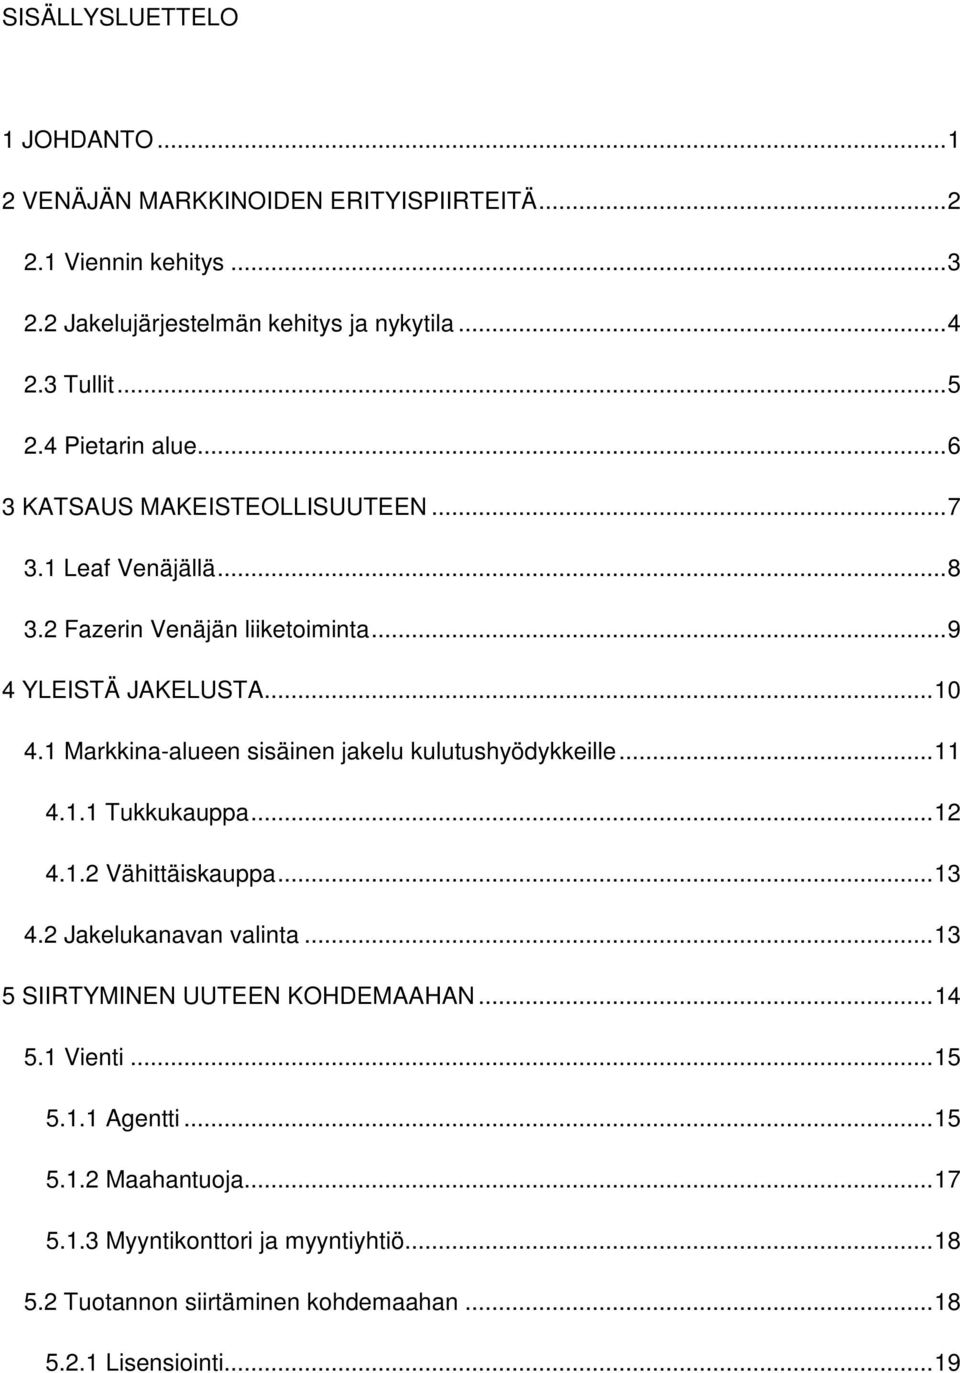 1 Markkina-alueen sisäinen jakelu kulutushyödykkeille... 11 4.1.1 Tukkukauppa... 12 4.1.2 Vähittäiskauppa... 13 4.2 Jakelukanavan valinta.